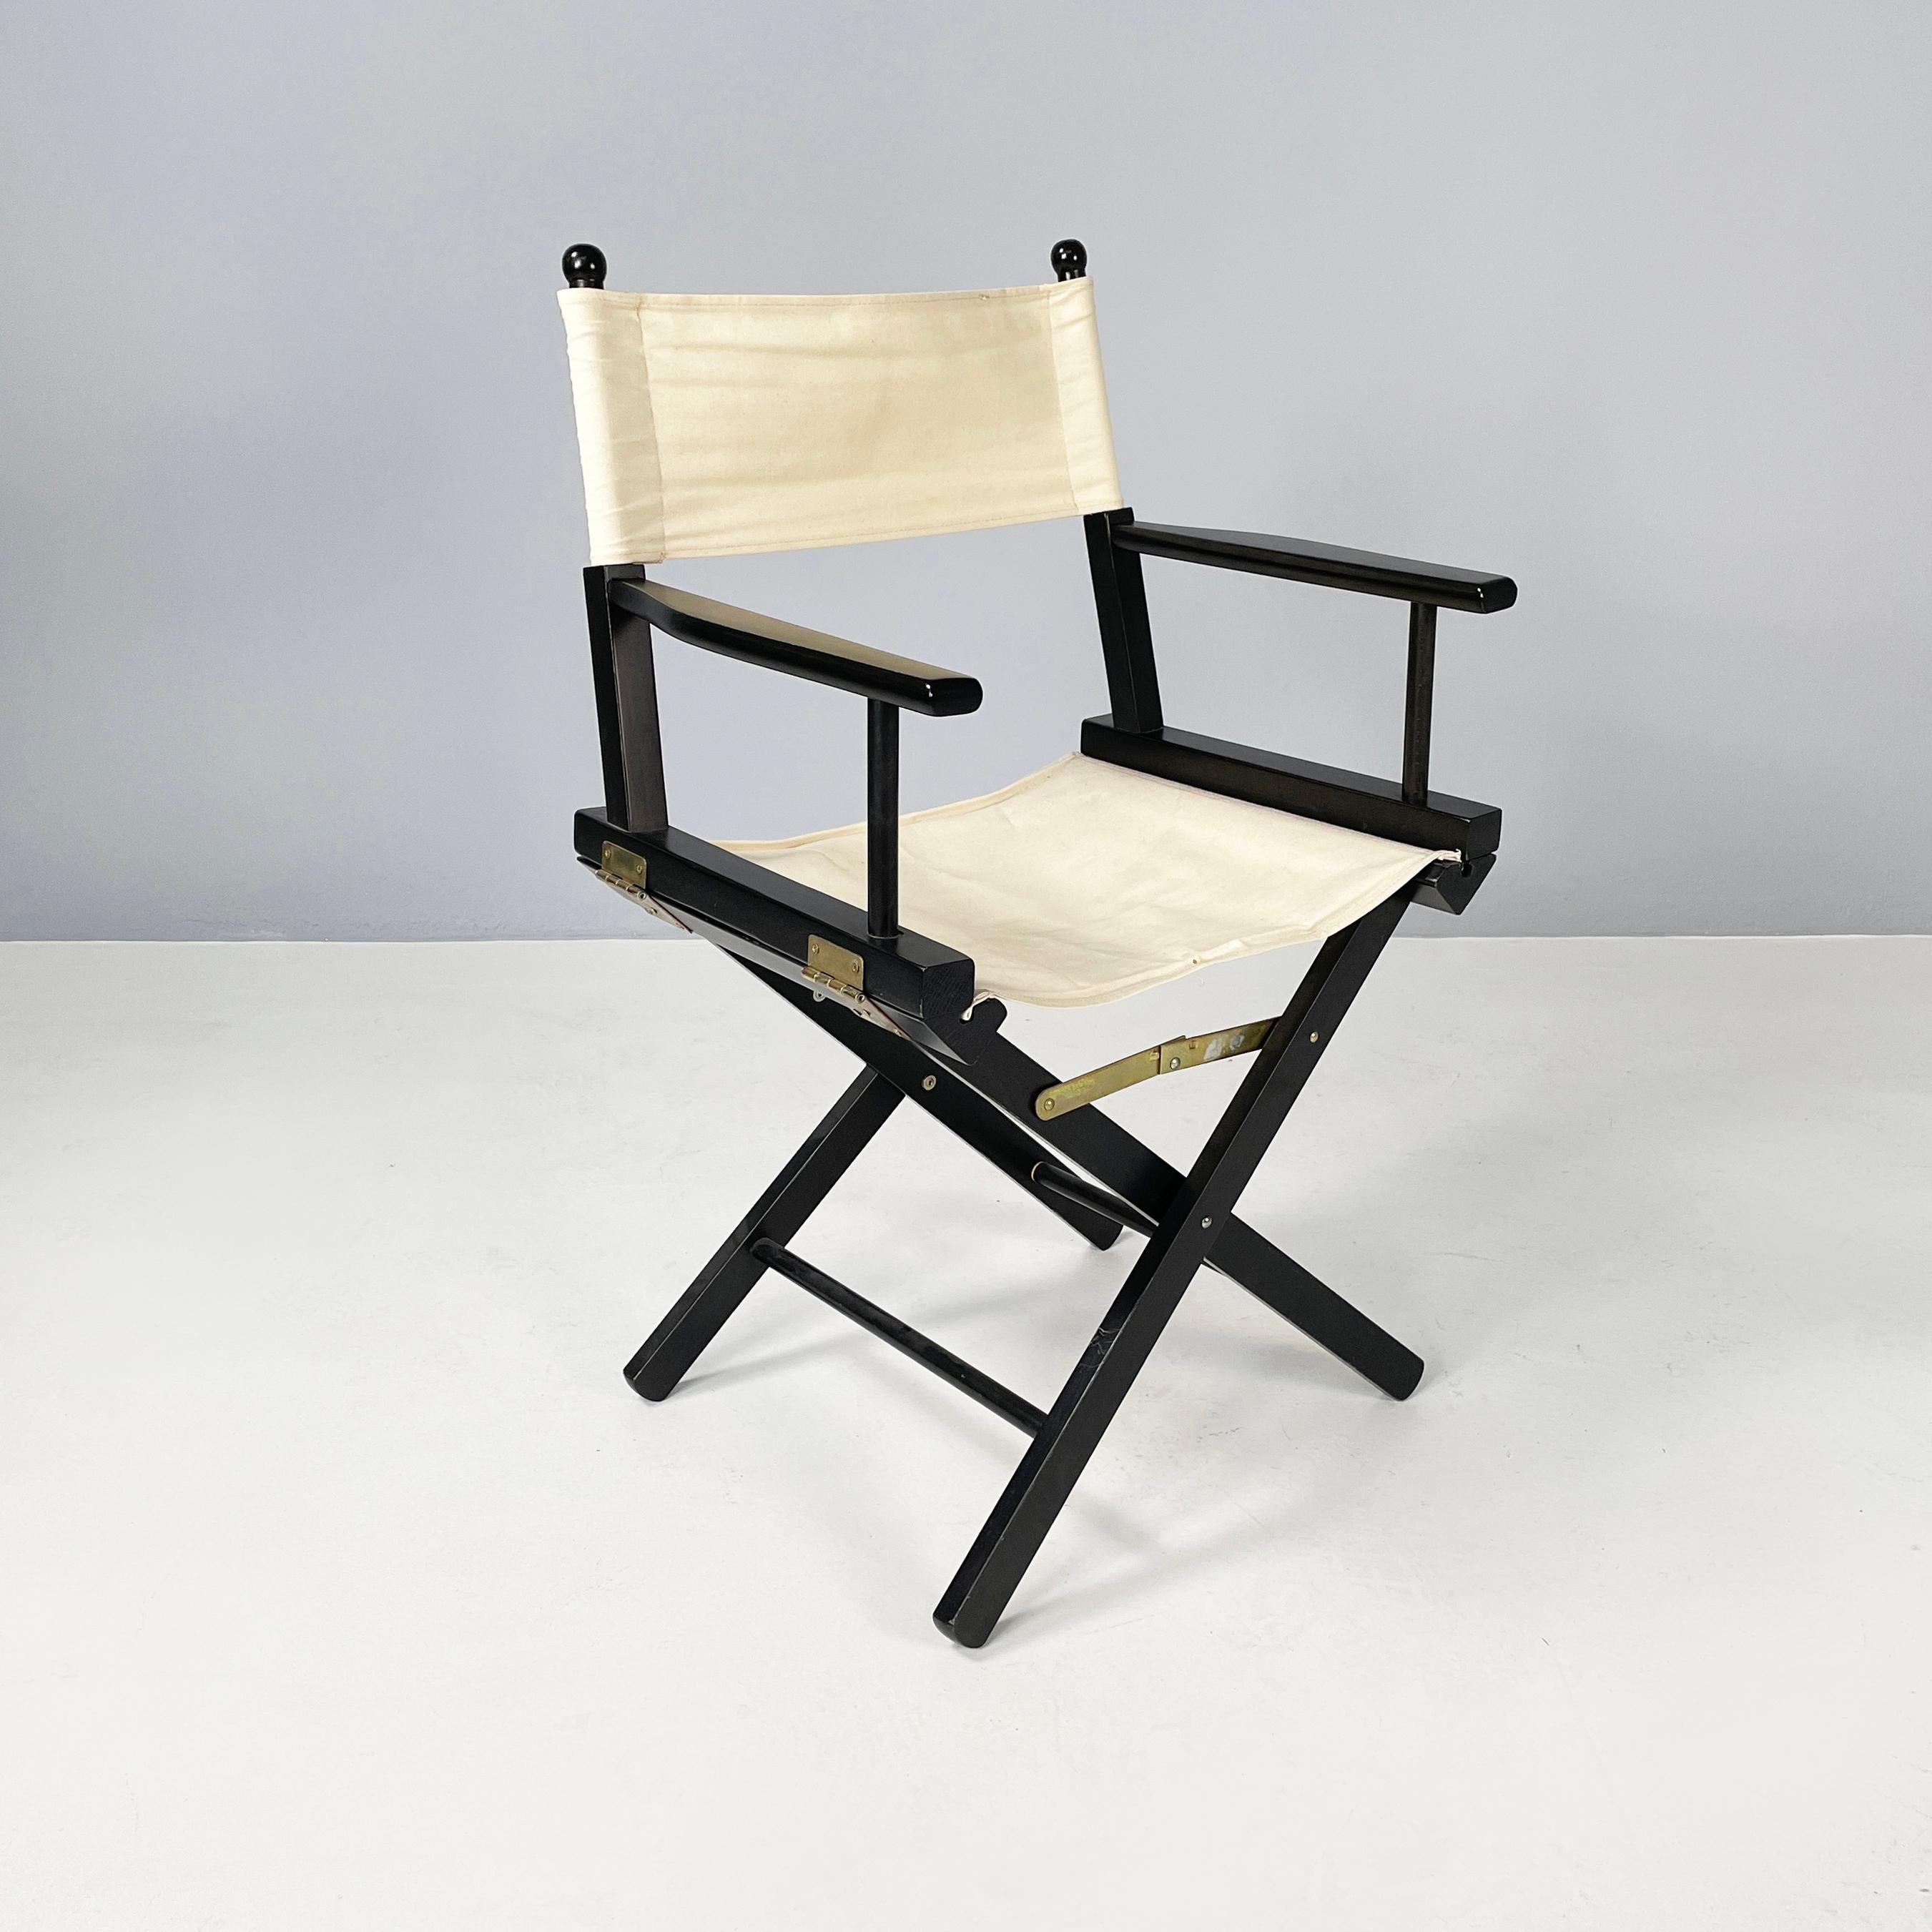 Italienische moderne Klappstühle aus schwarzem Holz und weißem Stoff von Calligaris, 1990er Jahre
Satz von 8 klappbaren Regiestühlen mit schwarz lackiertem Holzgestell. Die quadratische Sitzfläche und die rechteckige Rückenlehne bestehen aus einer